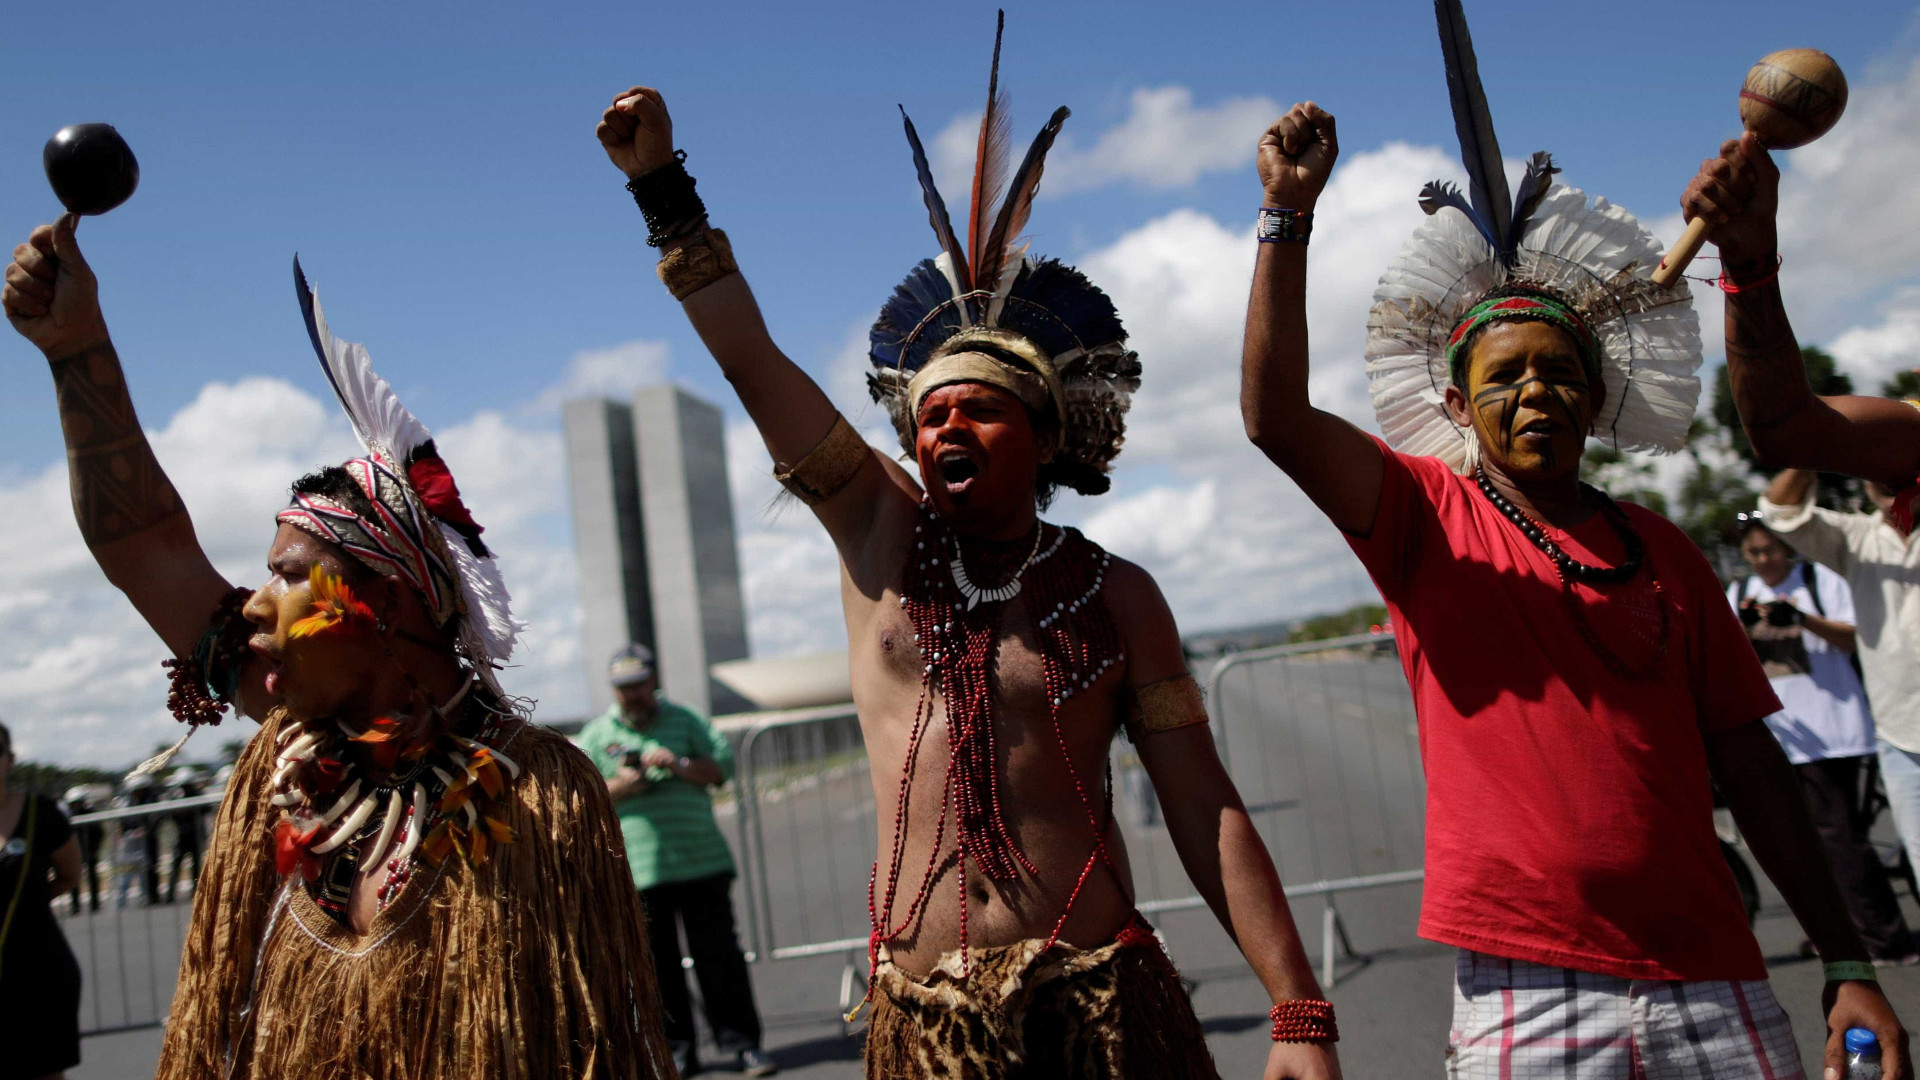 Ameaçados de morte, líderes indígenas pedem diálogo com Bolsonaro